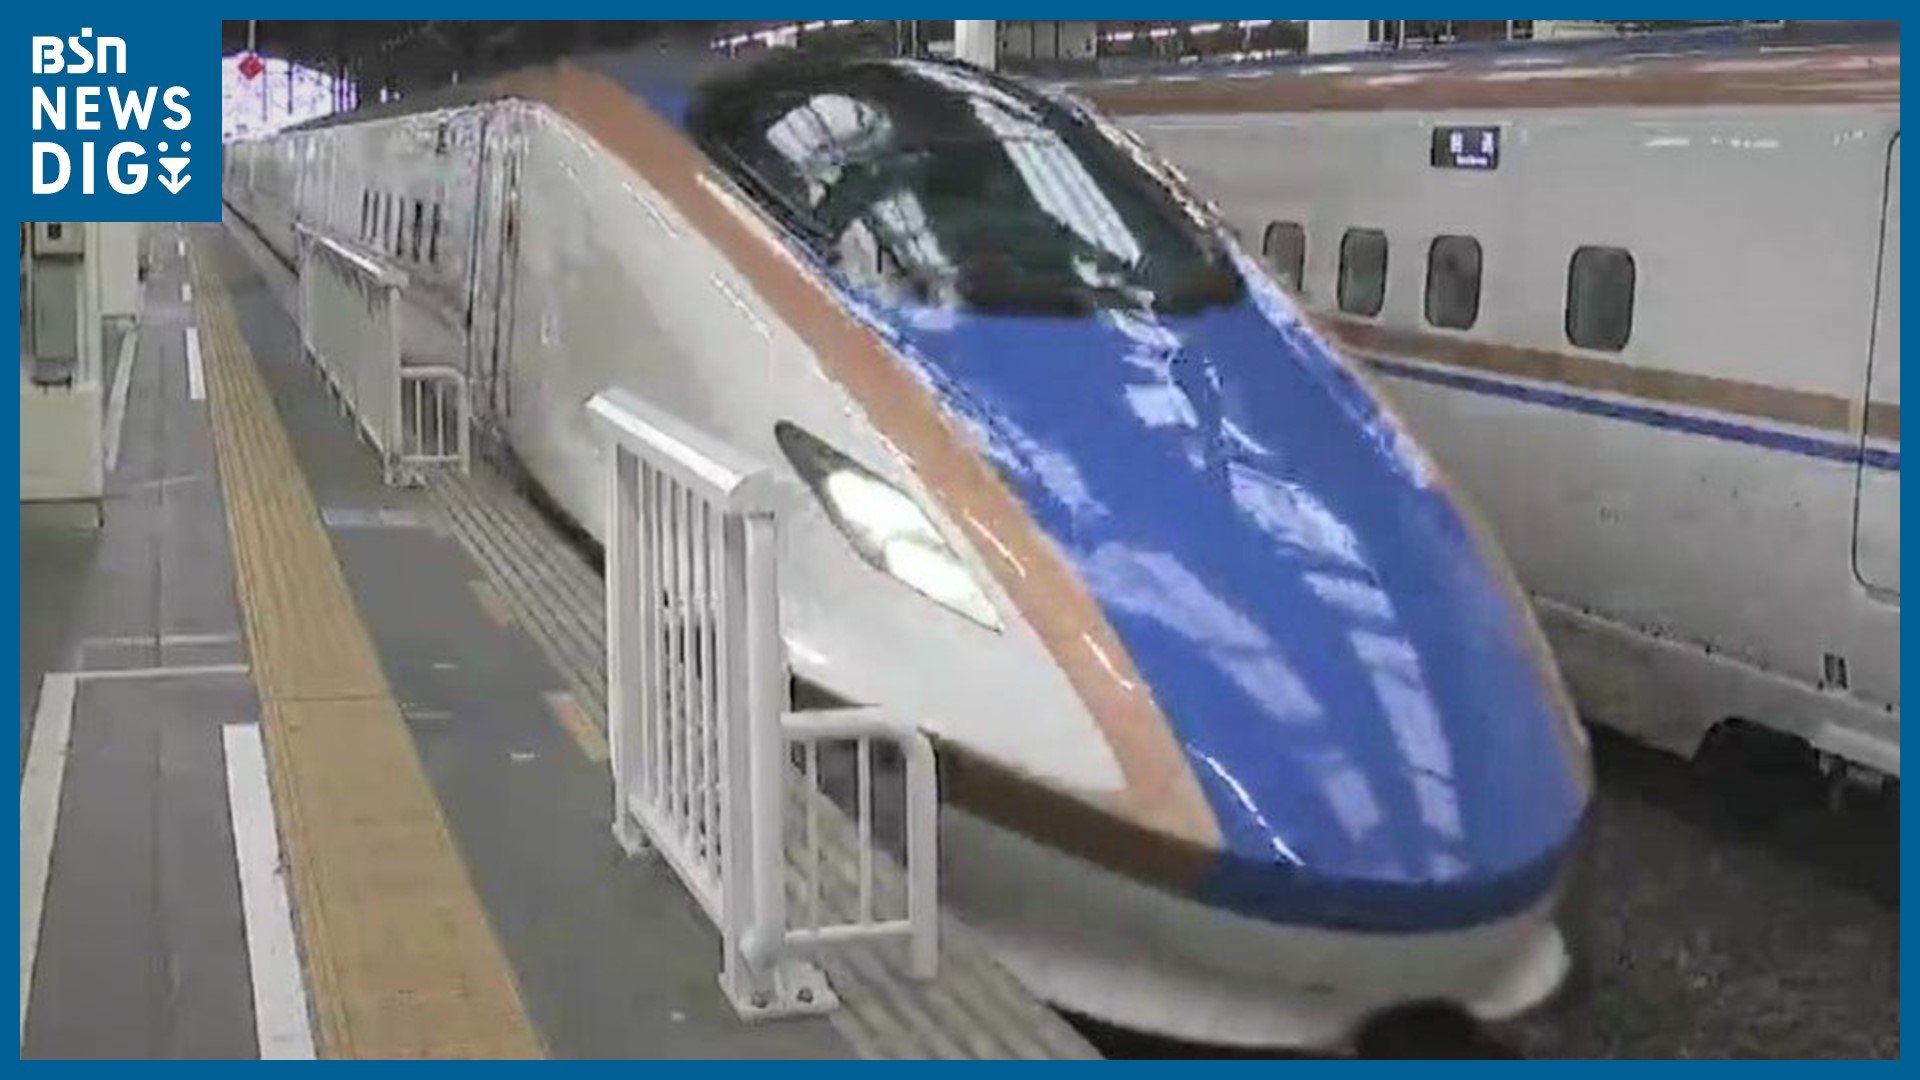 『北陸新幹線』で臨時列車増発 それに接続する『サンダーバード』も運転　東海道新幹線 運転見合わせの影響